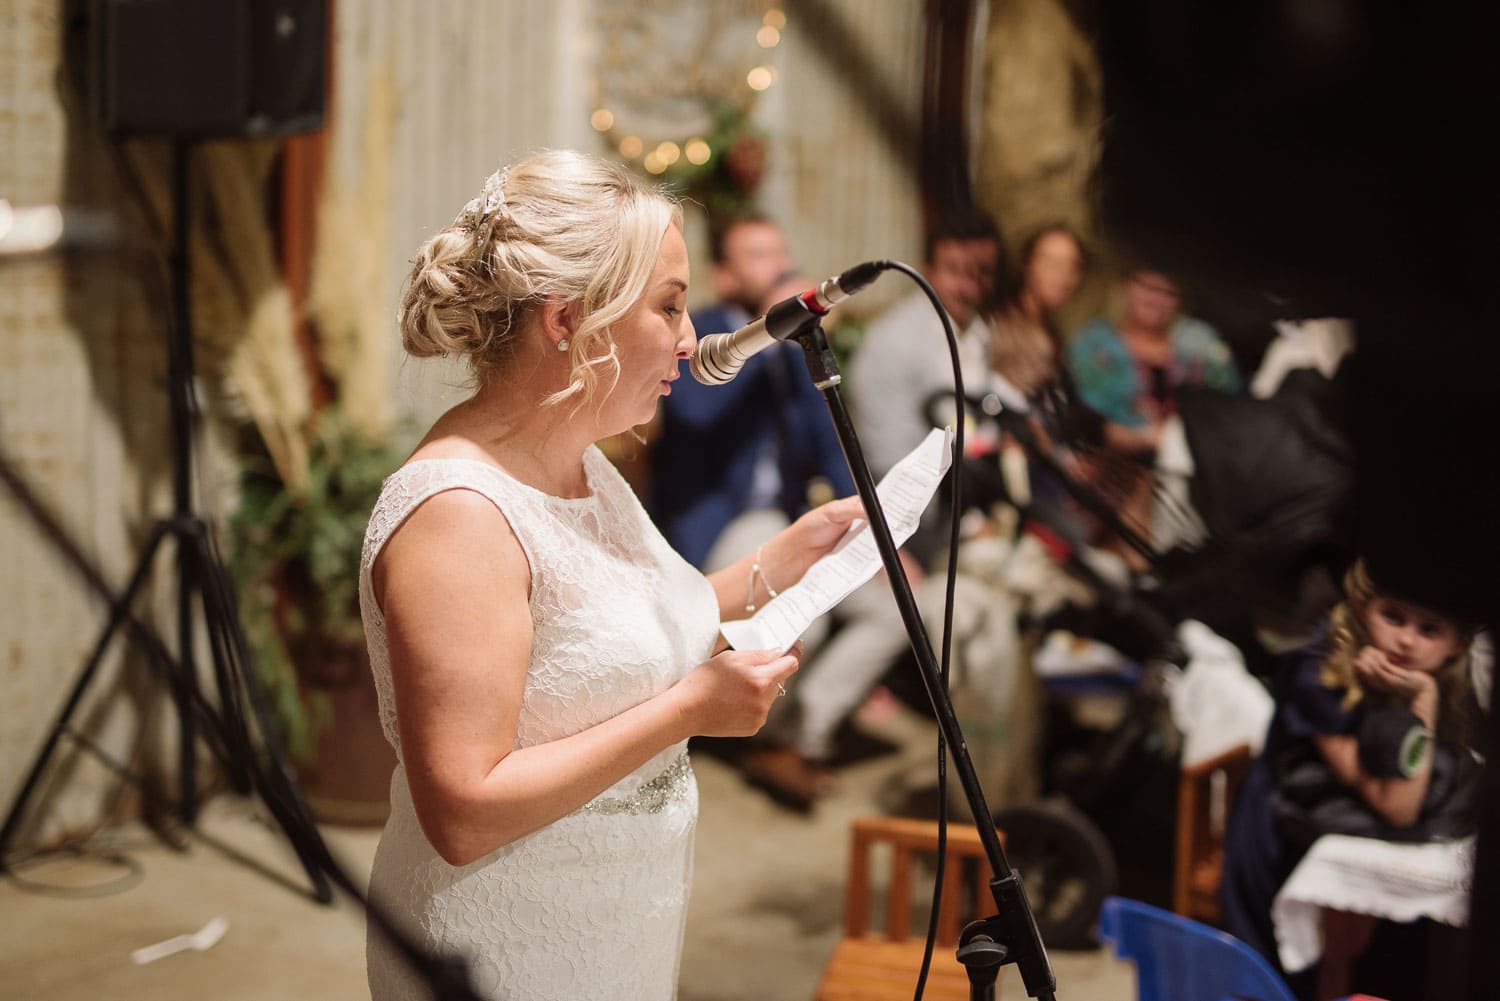 Brides speech at her ondit wedding